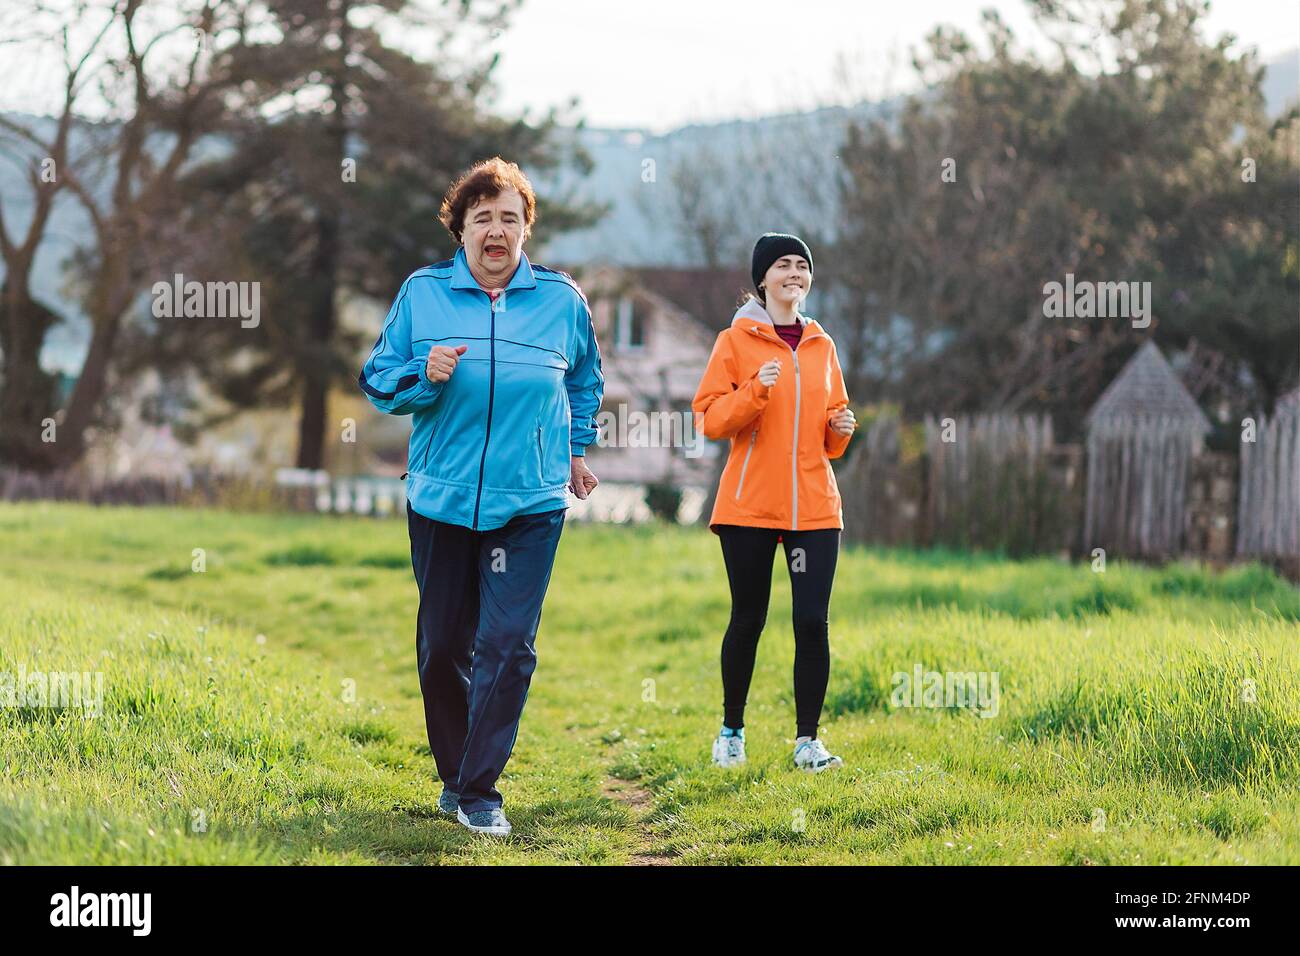 Fotografía mujer corriendo en un parque con ropa de jogging